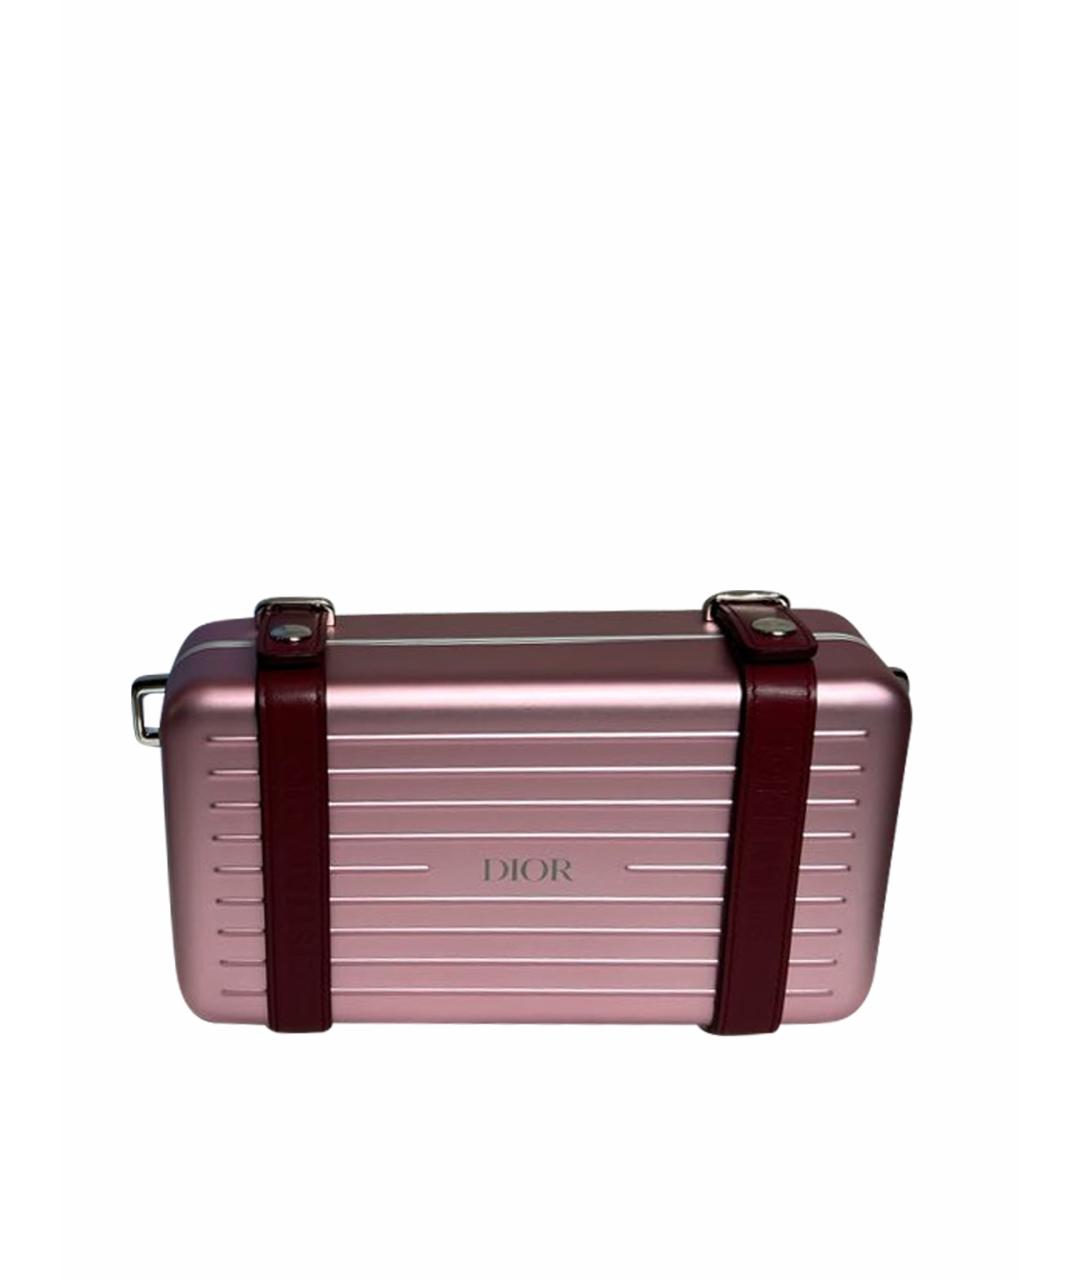 Rimowa Розовая сумка через плечо, фото 1